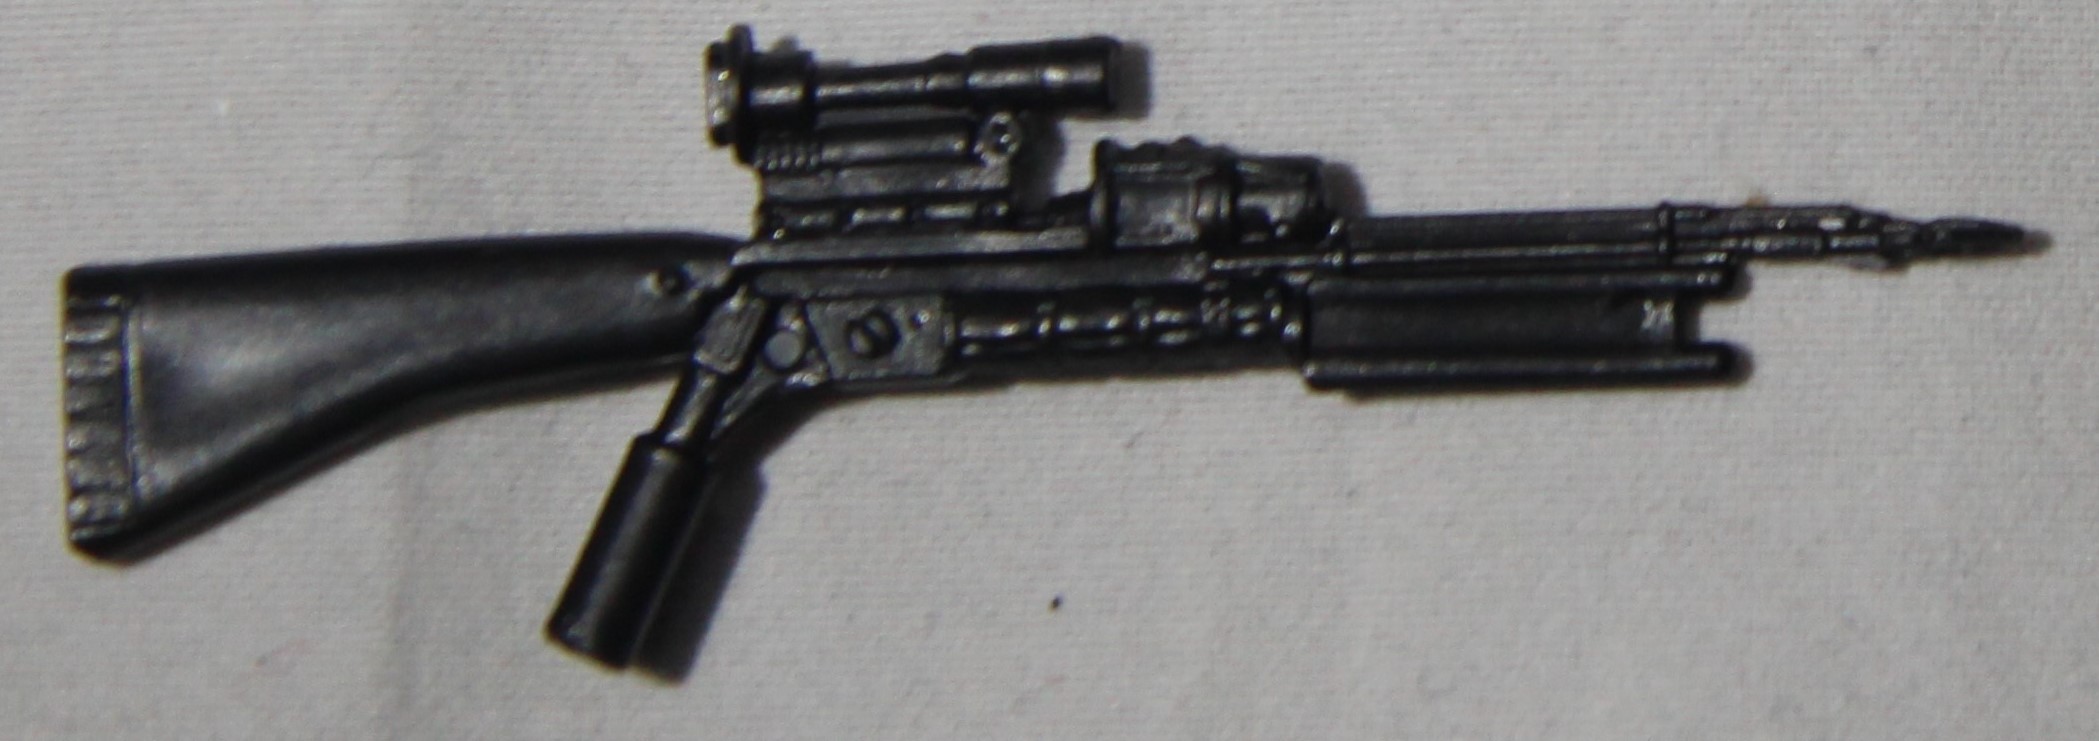 1986 Zandar Gun